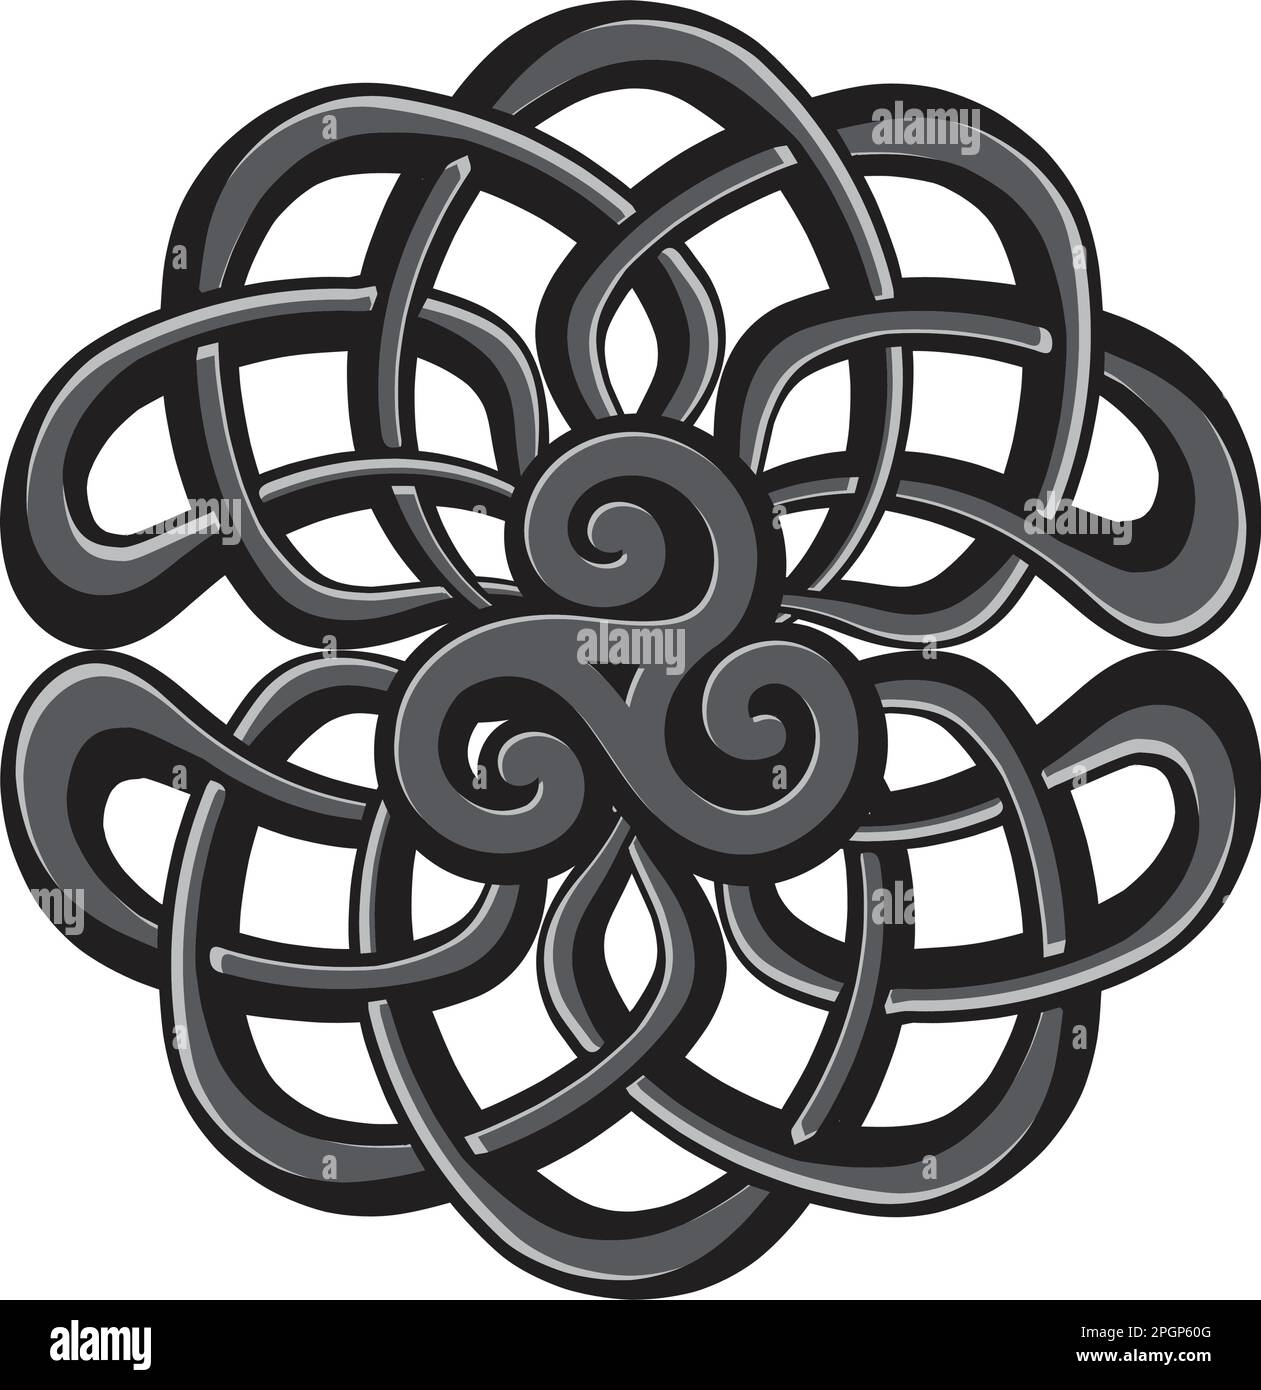 Tripla spirale, antico simbolo celtico Illustrazione Vettoriale